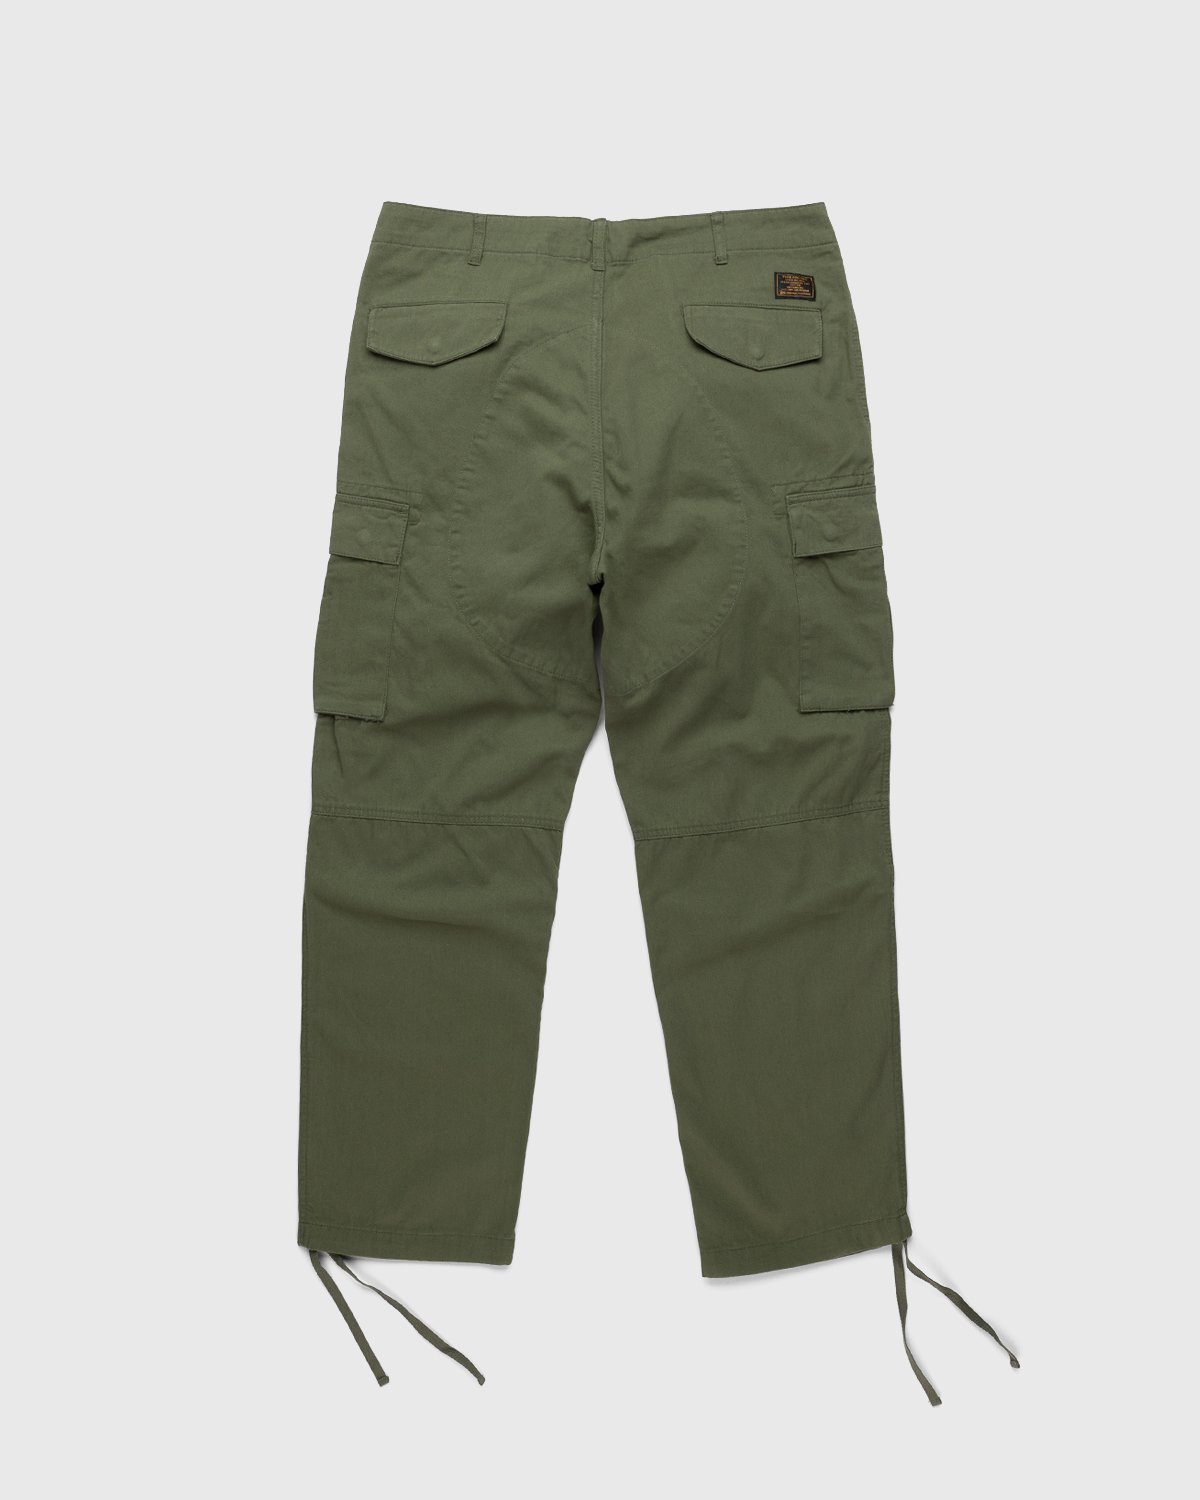 Patta - Basic Cargo Pants Olive - Clothing - Green - Image 2